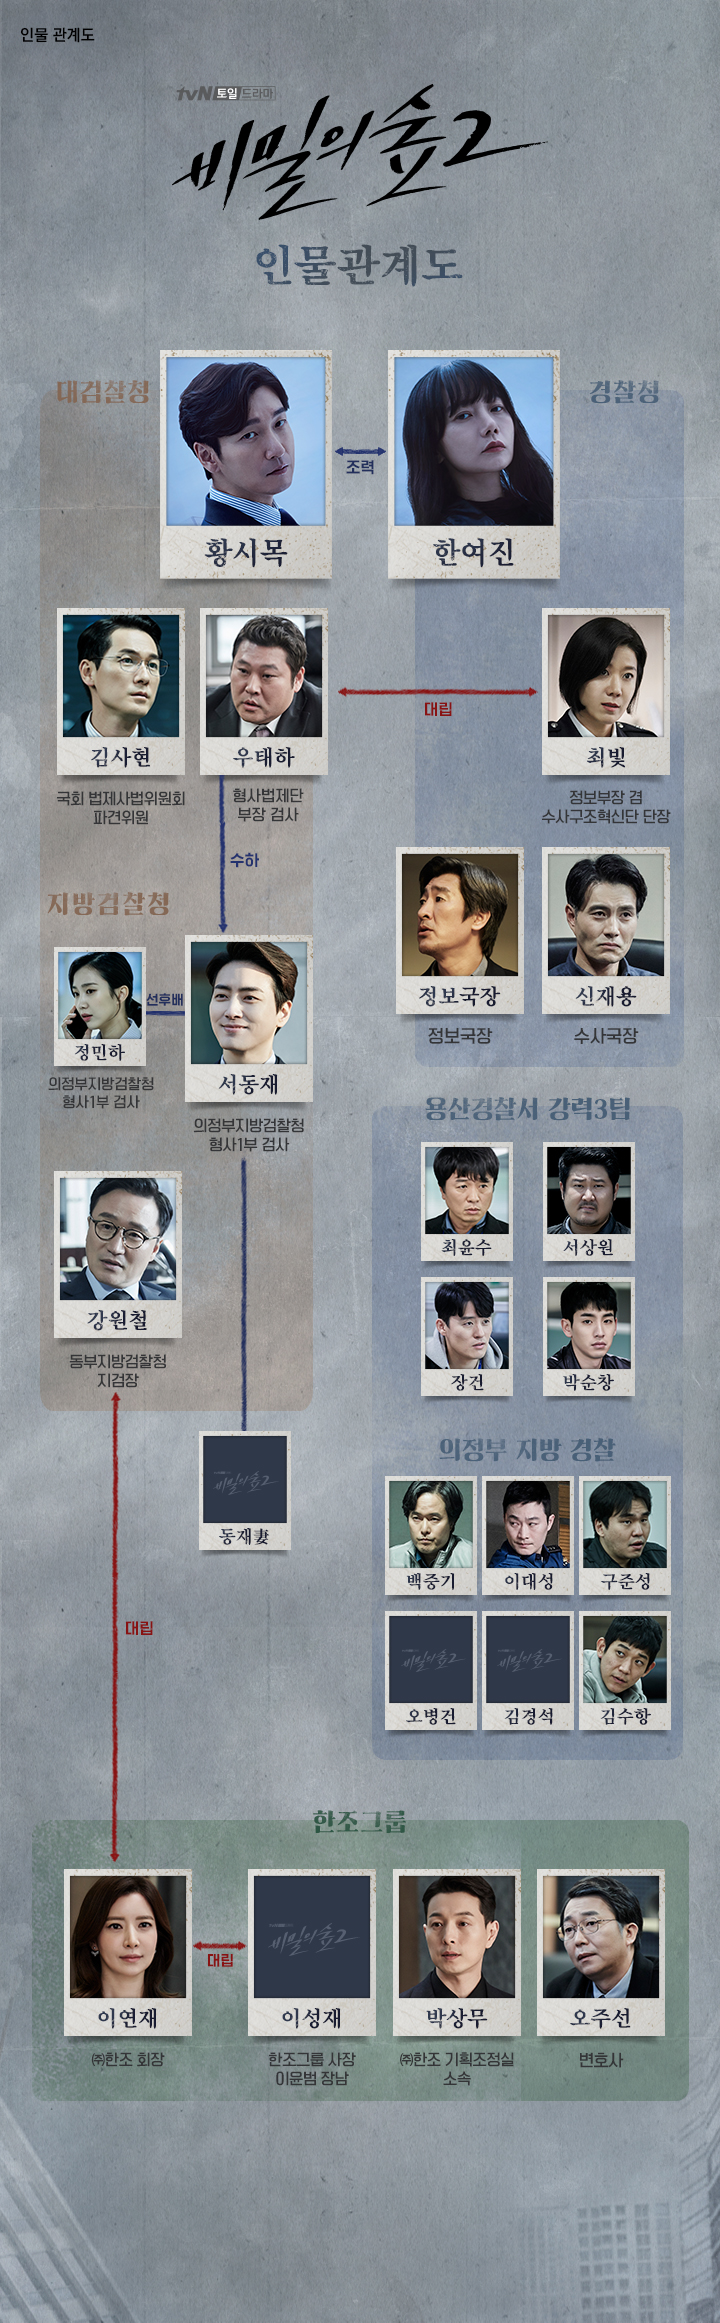 韓国ドラマ 秘密の森2 相関図とキャスト情報